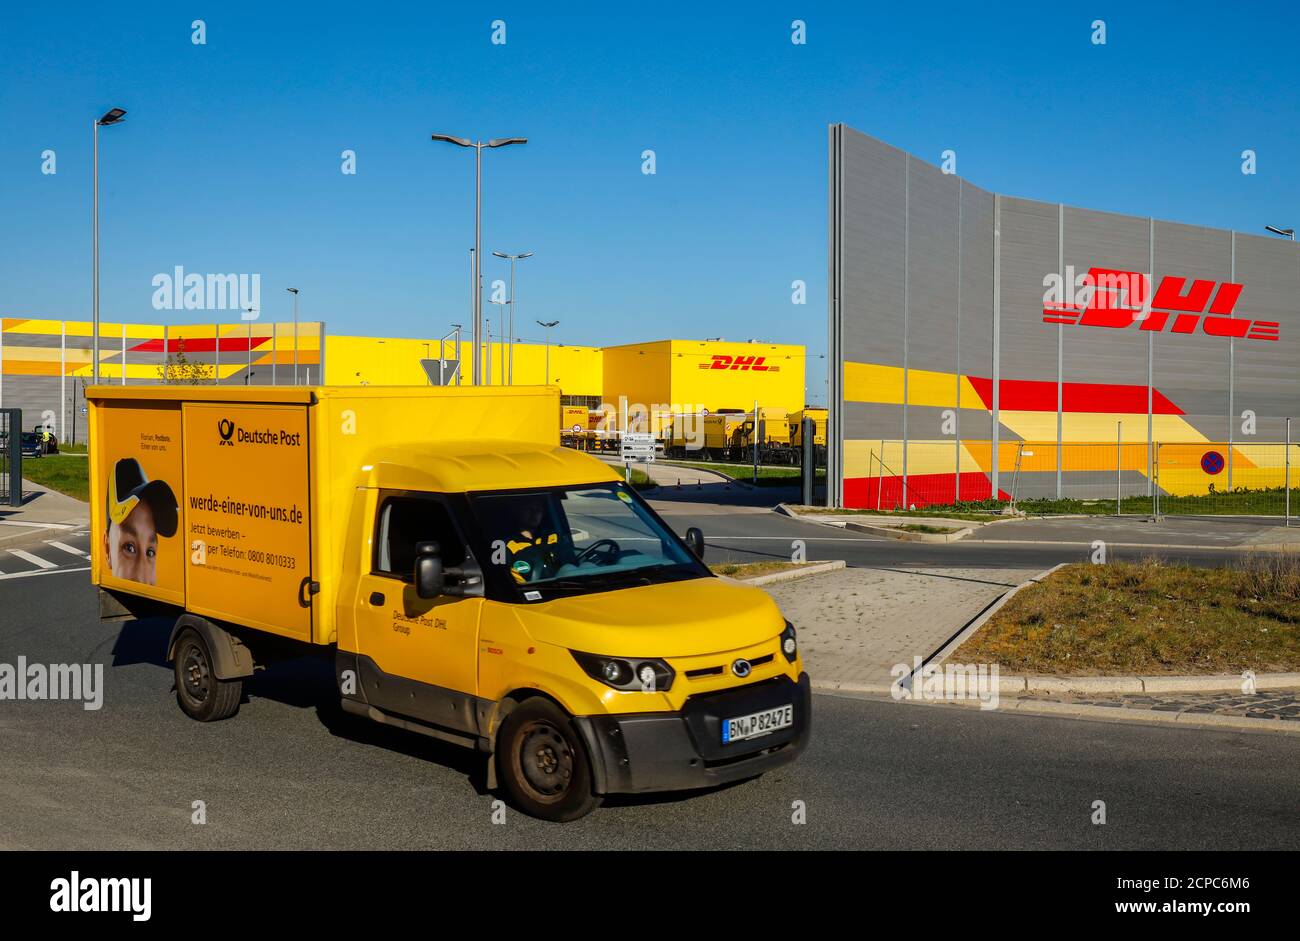 Bochum, Ruhrgebiet, Nordrhein-Westfalen, Deutschland - DHL Logistik Paketcenter, MARK 51, Umbau des ehemaligen Opel-Werks in Bochum Gelaendes. Stockfoto